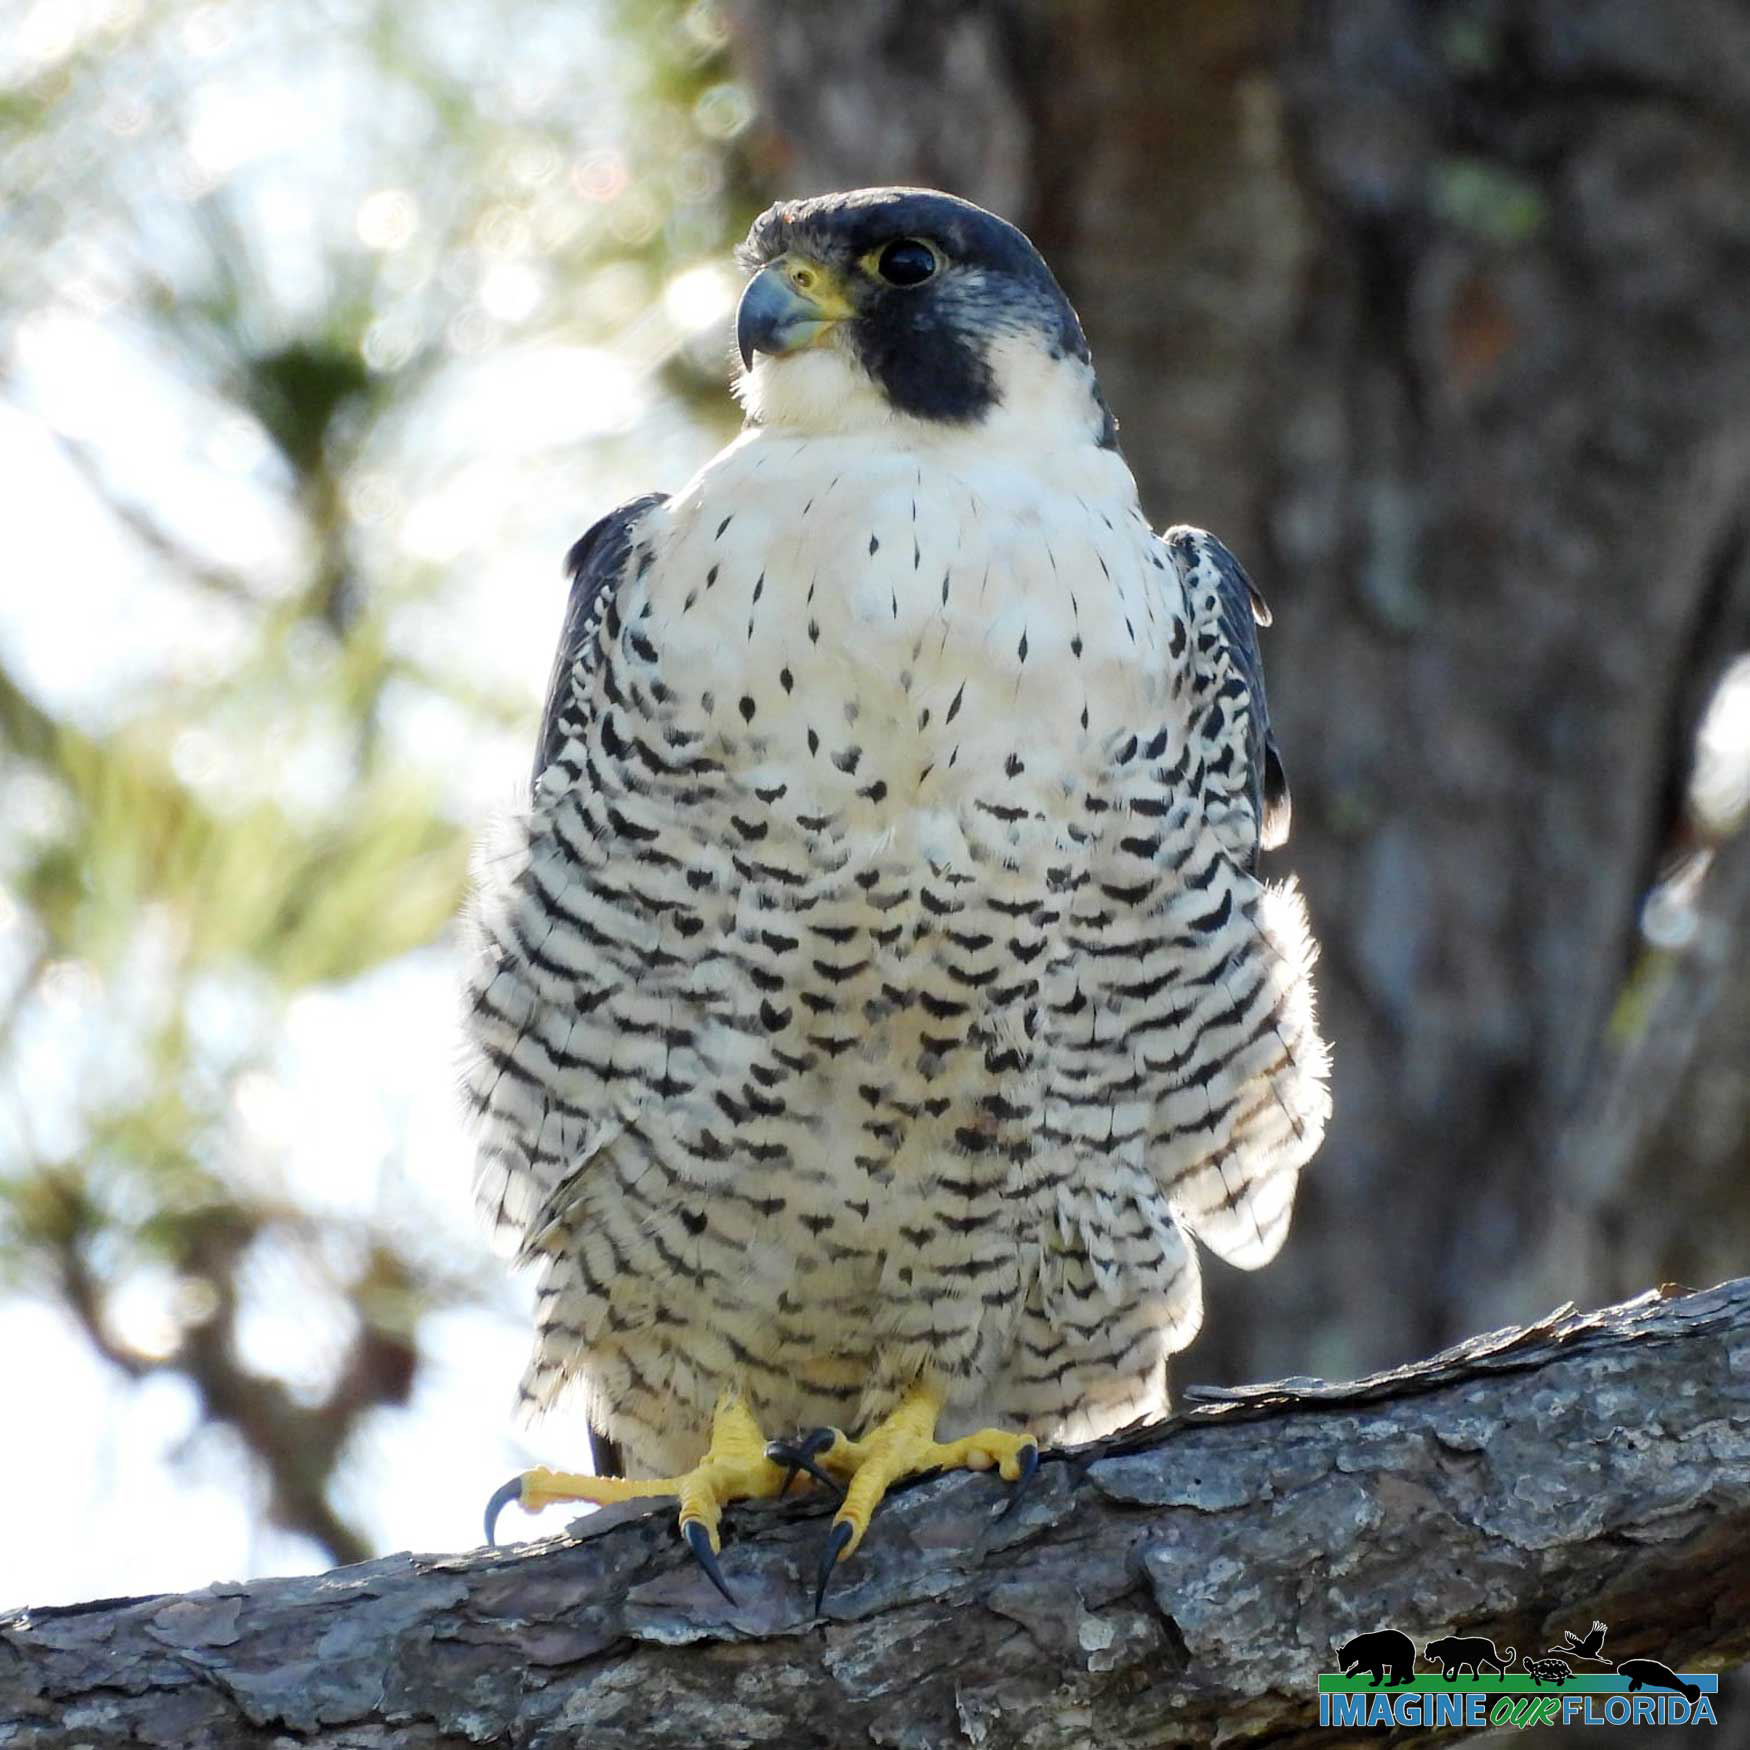 Peregrine Falcon | Imagine Our Florida, Inc